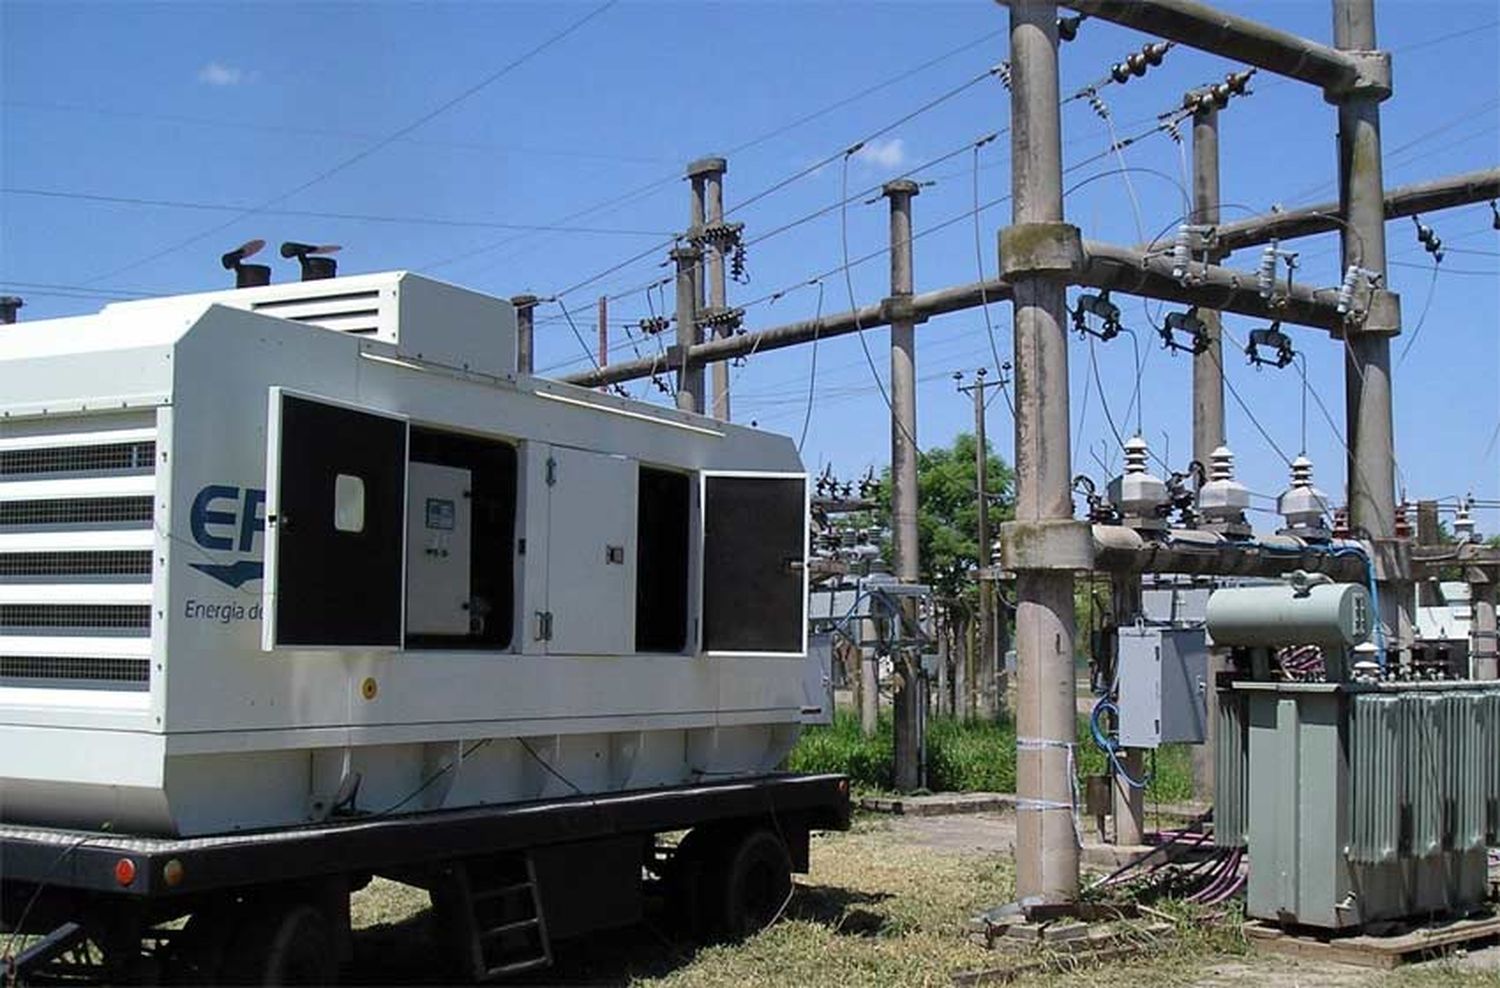 Nuevo récord de demanda de energía eléctrica en la Provincia de Santa Fe